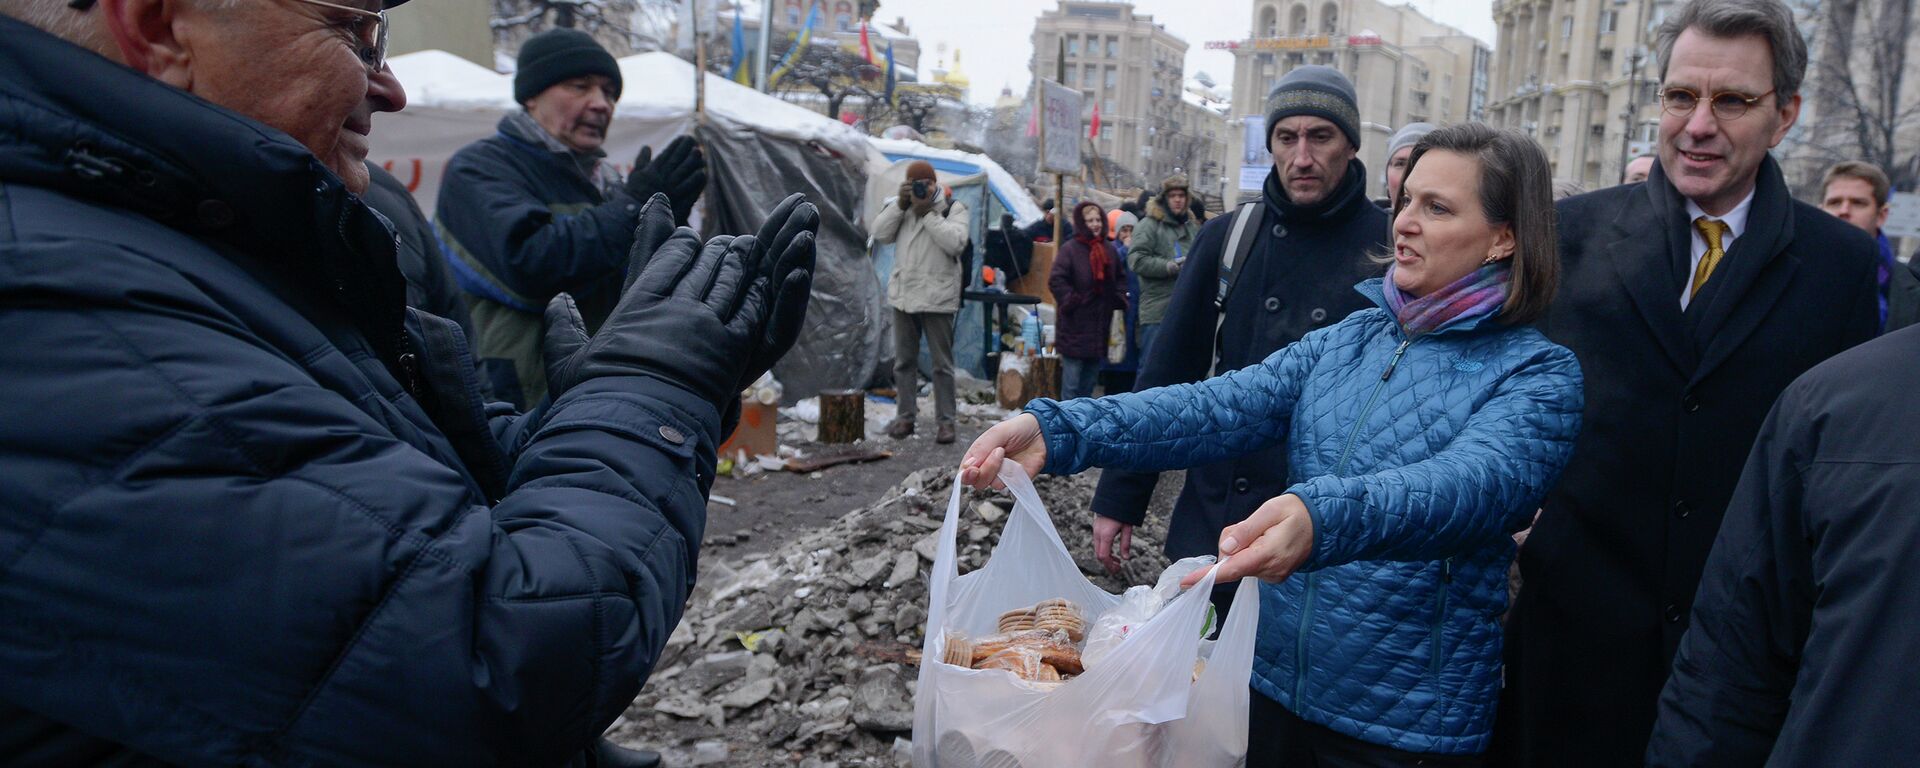 Victoria Nuland et l’ambassadeur des États-Unis en Ukraine Geoffrey R. Pyatt distribuent des sandwichs, des brioches et des tartes lors des événements de l'Euromaïdan (coup d'Etat de 2014) en Ukraine - Sputnik Afrique, 1920, 08.08.2023